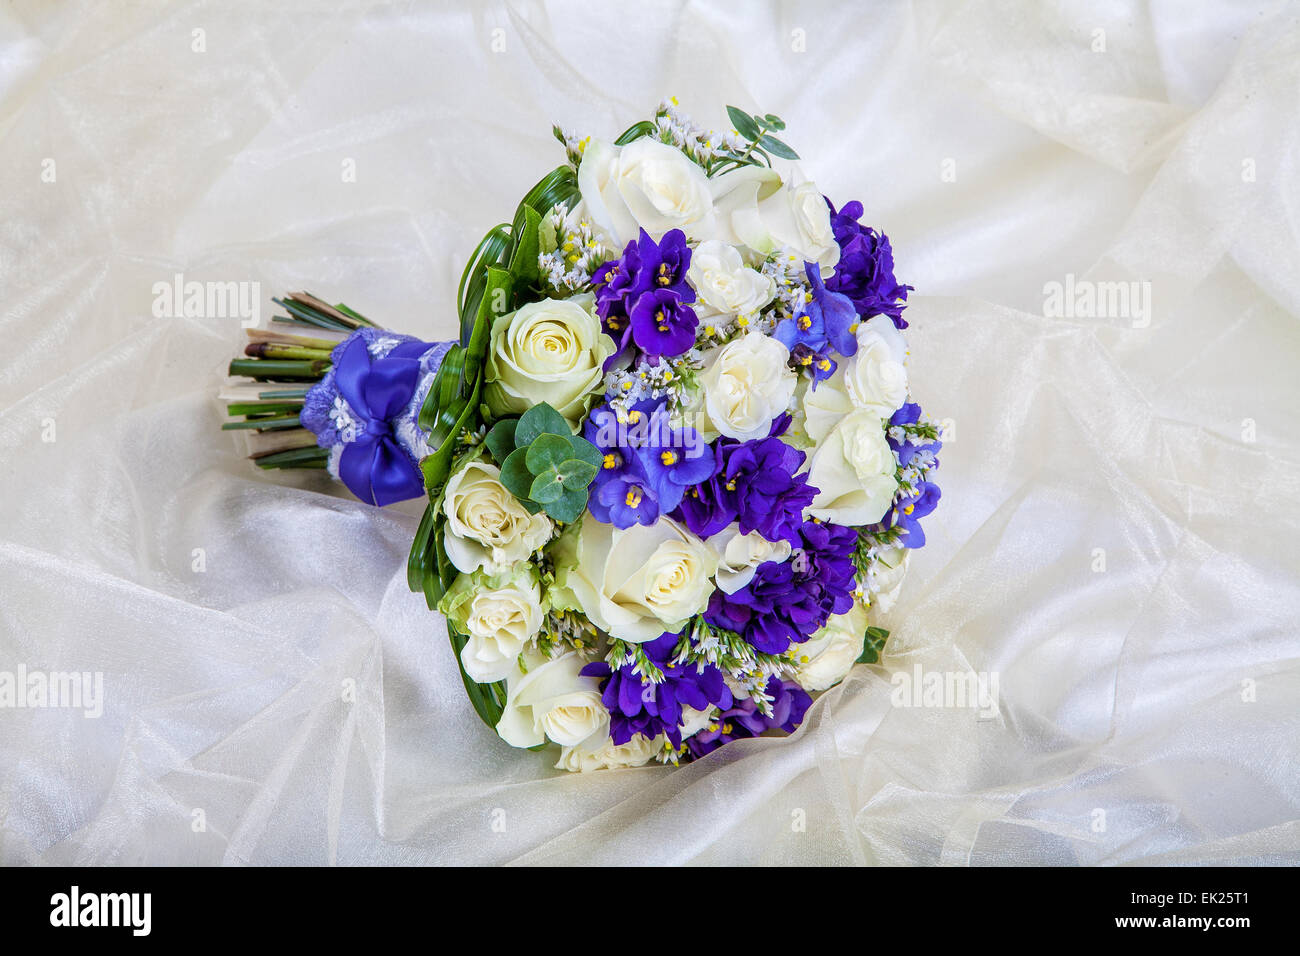 Mariage bouquet de la mariée contre un tissu blanc Banque D'Images